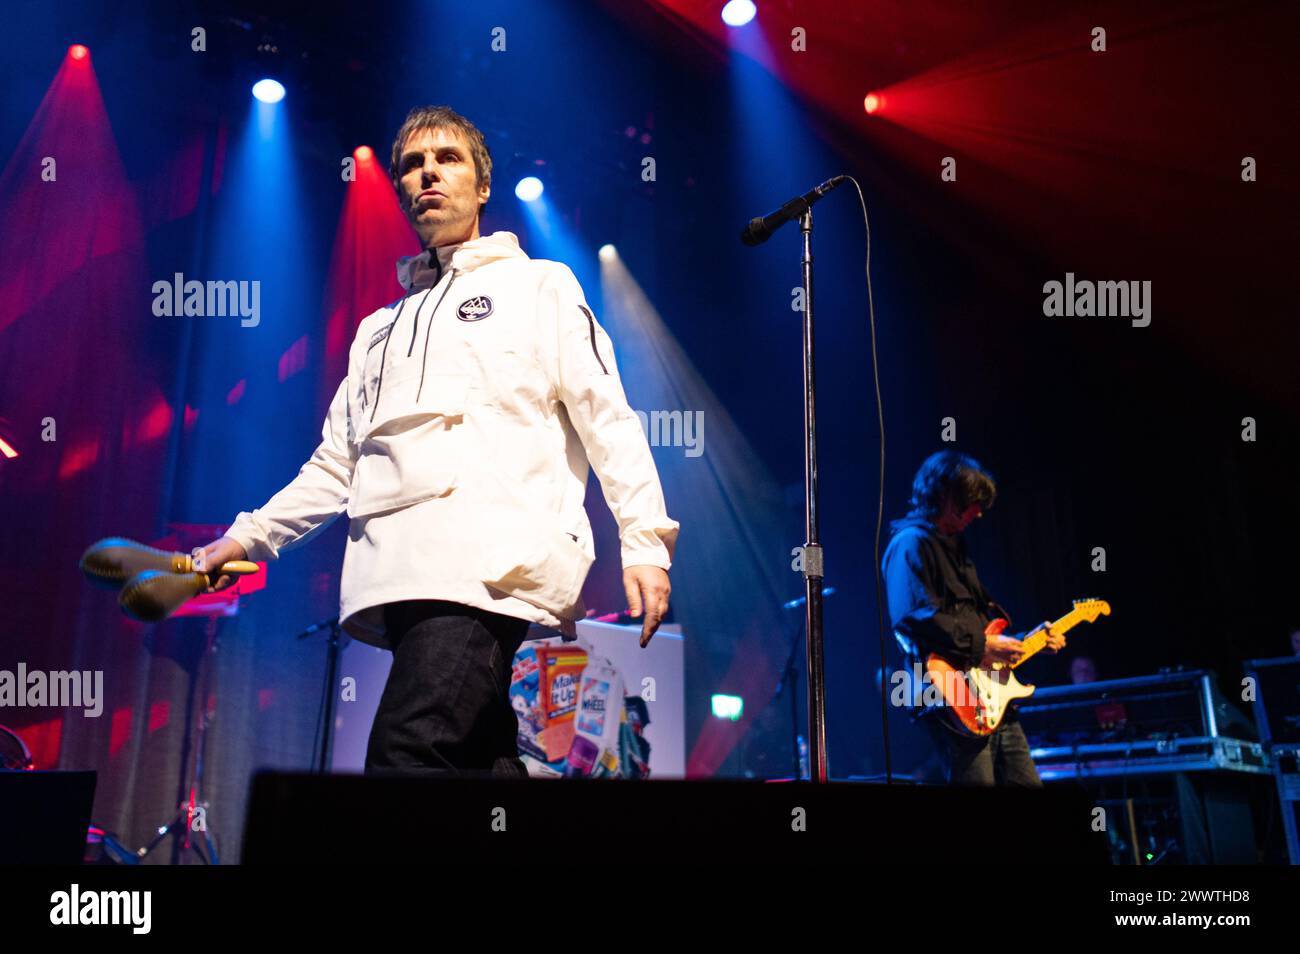 Liam Gallagher e John Squire in Concert a Londra Liam Gallagher e John Squire sul palco all'O2 Forum Kentish Town, Londra. London O2 Forum Kentish Town Regno Unito Copyright: XJohnxBarryx JB2 9340 Foto Stock